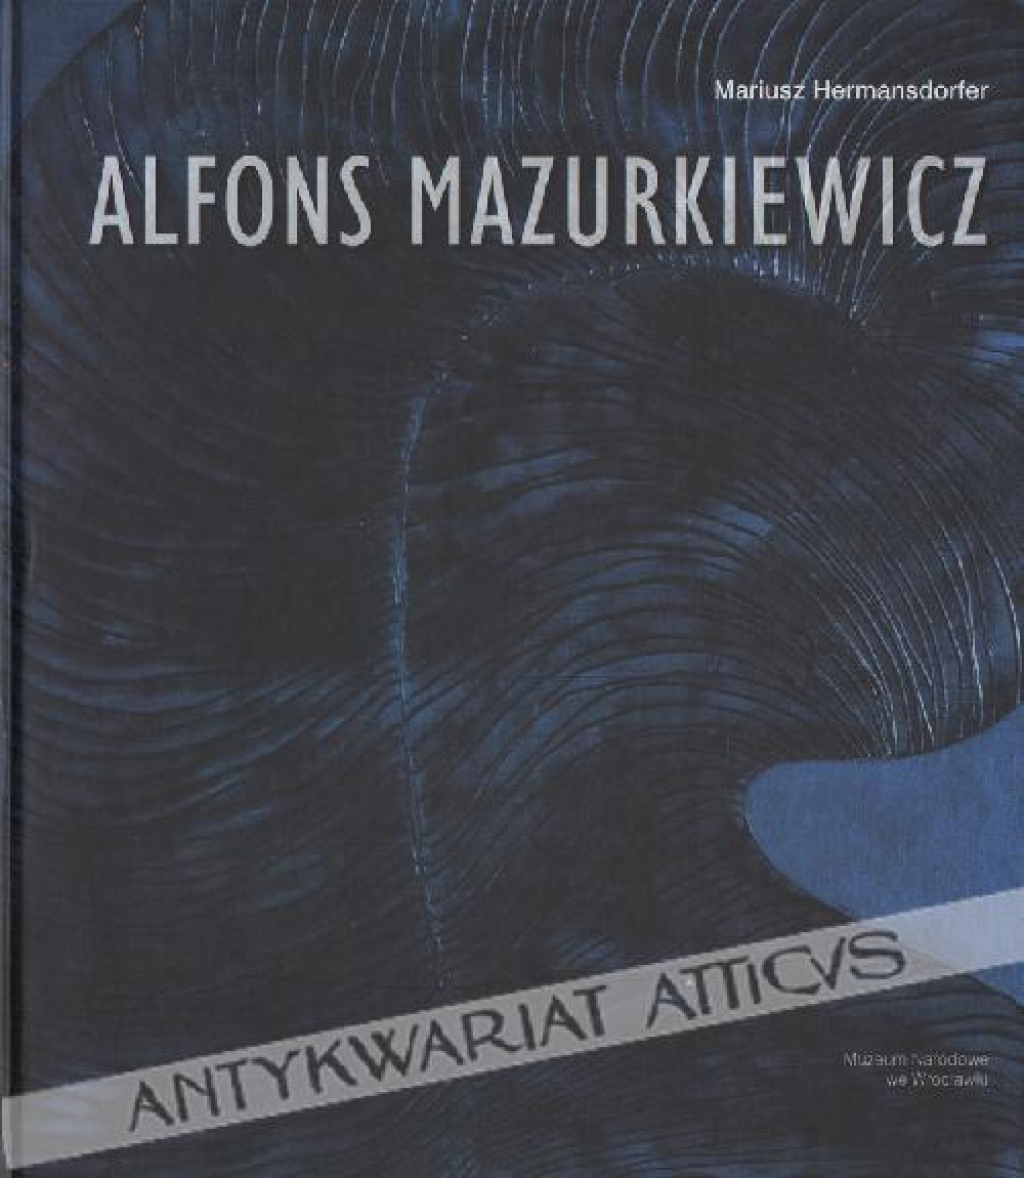 Alfons Mazurkiewicz